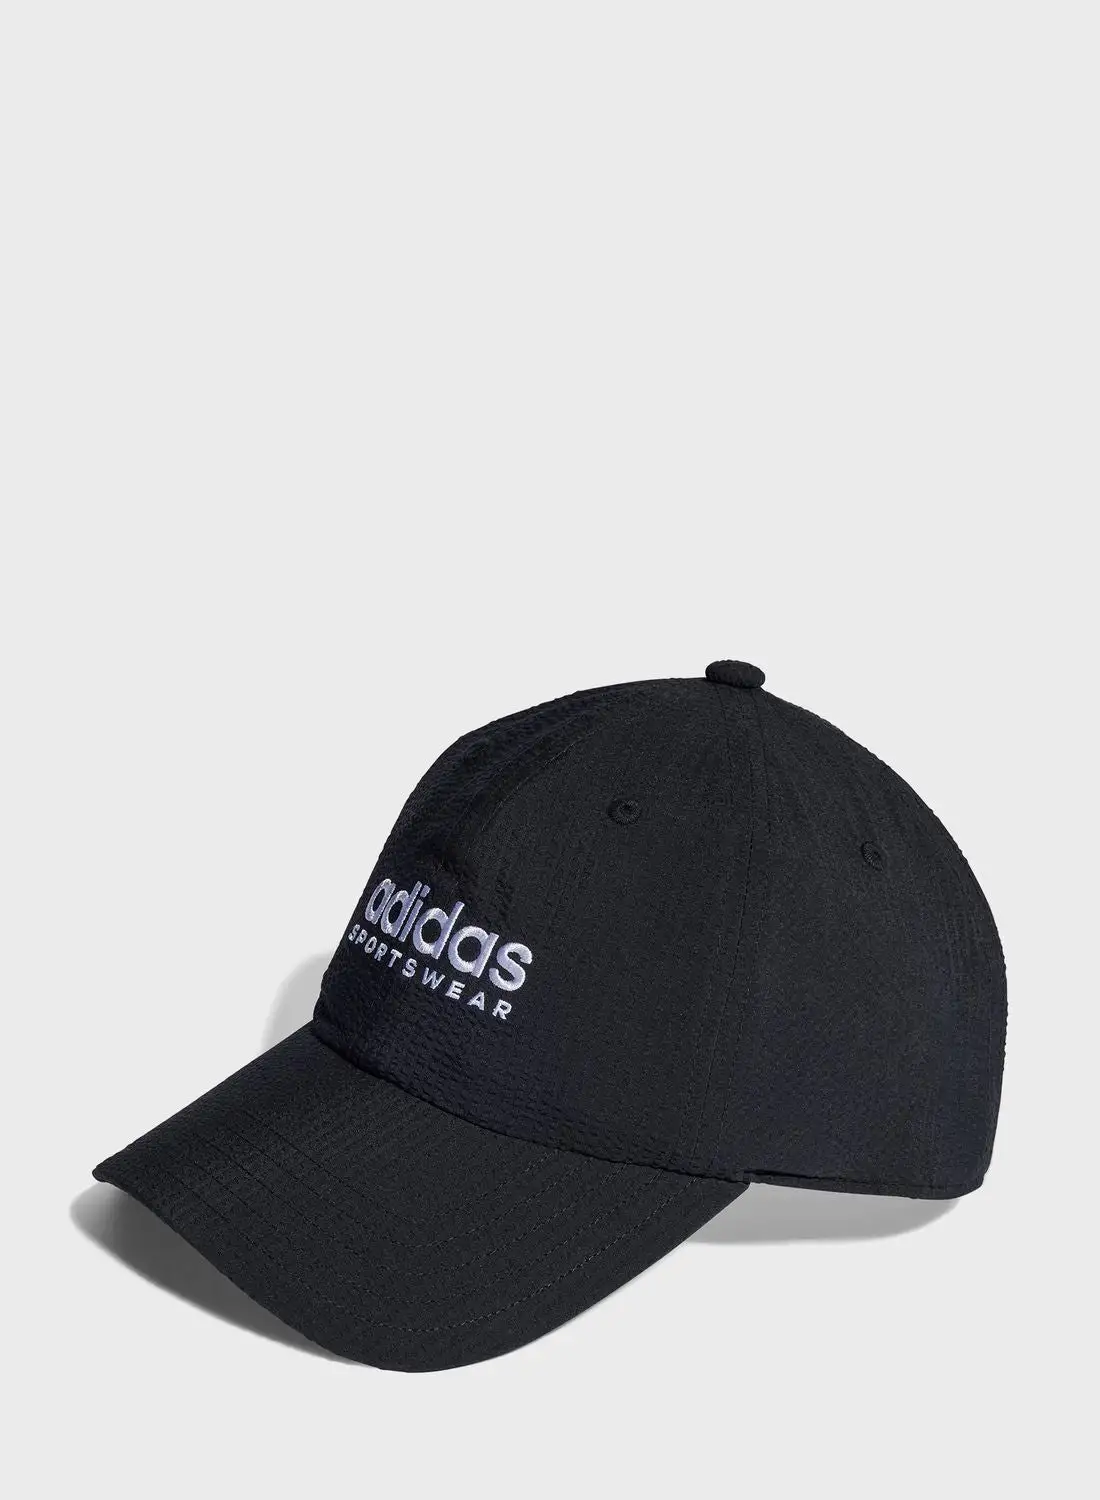 Adidas Dad Caps Seersucker Cap